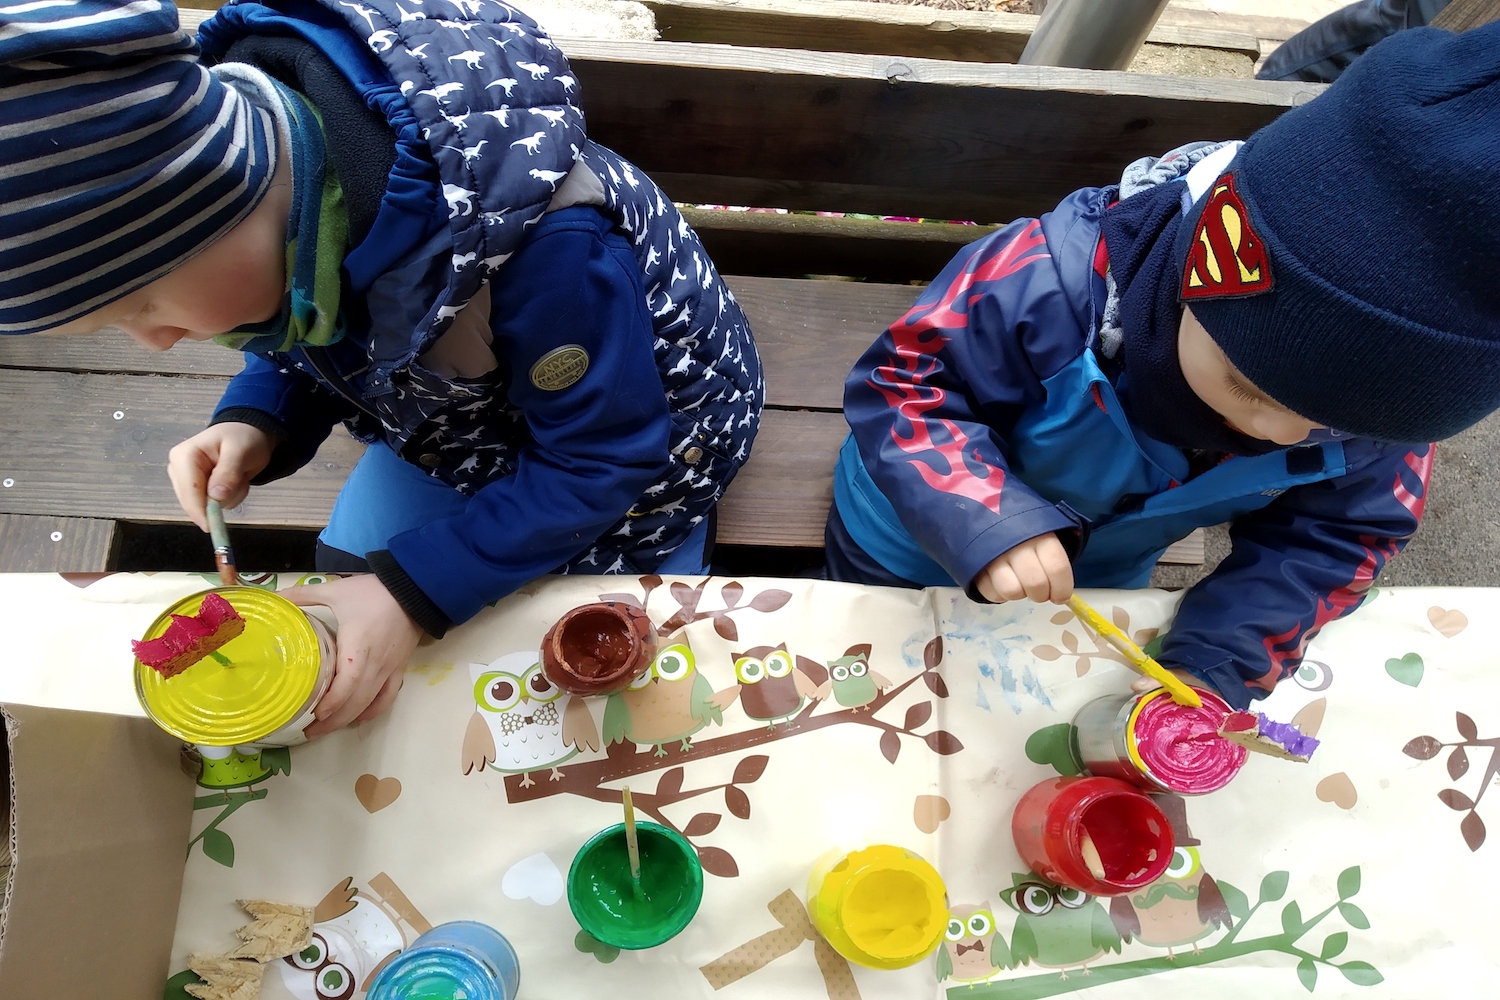 Naturkita Waldforscher - Zwei Kindergartenkinder auf einer Veranda bemalen mit Pinsel und Farben Blechdosen und Holzblumen.